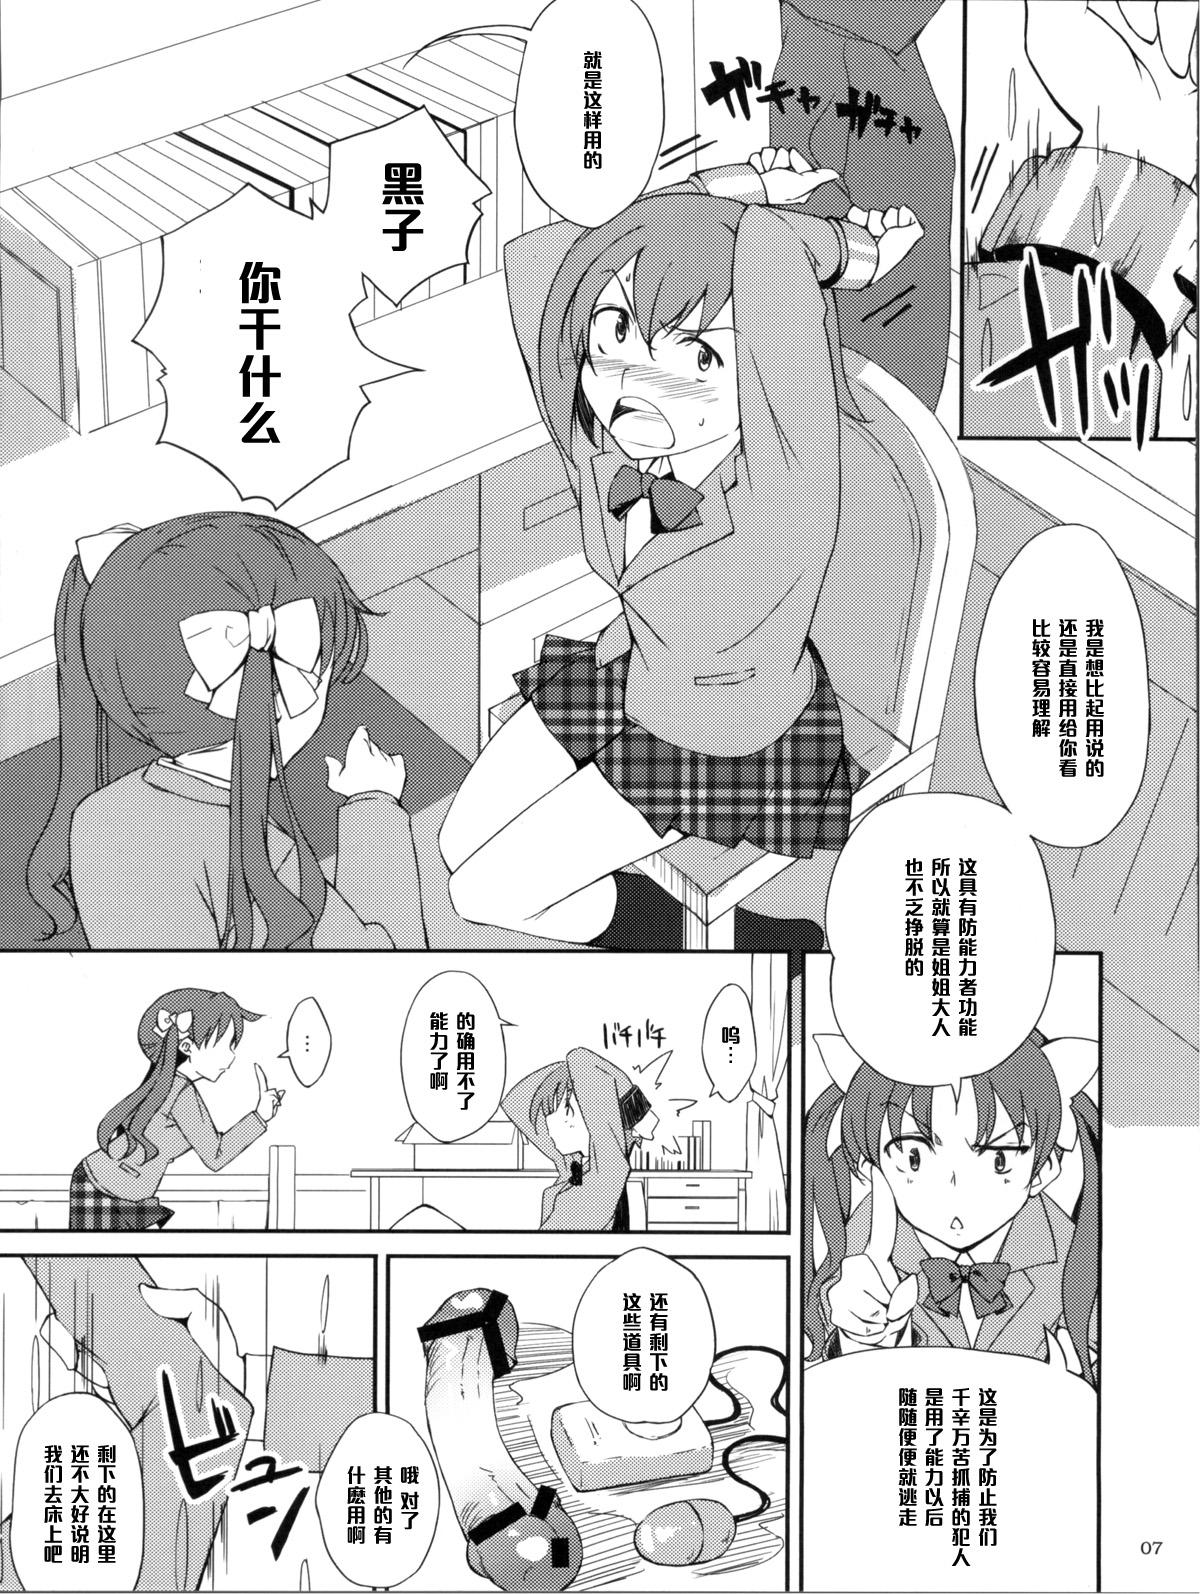 Twink Desu no!! - Toaru kagaku no railgun Teenfuns - Page 7